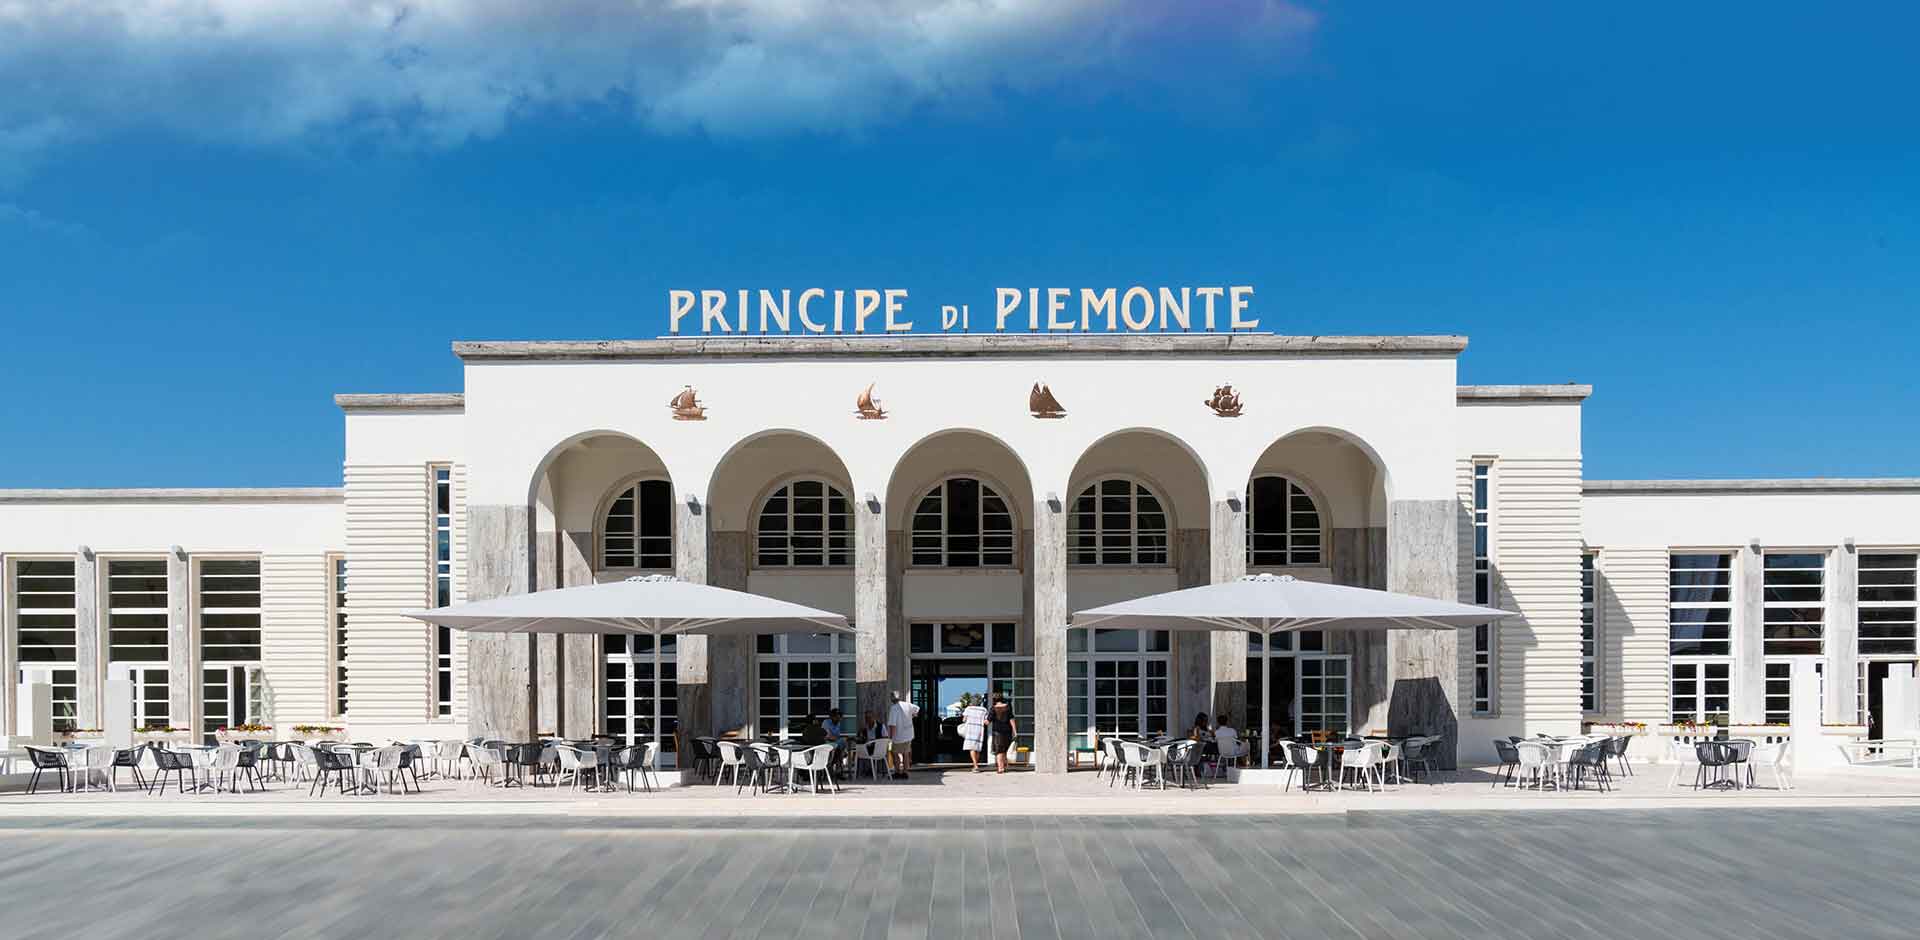 Centro Principe di Piemonte Viareggio, climatizzazione e idrotermosanitaria